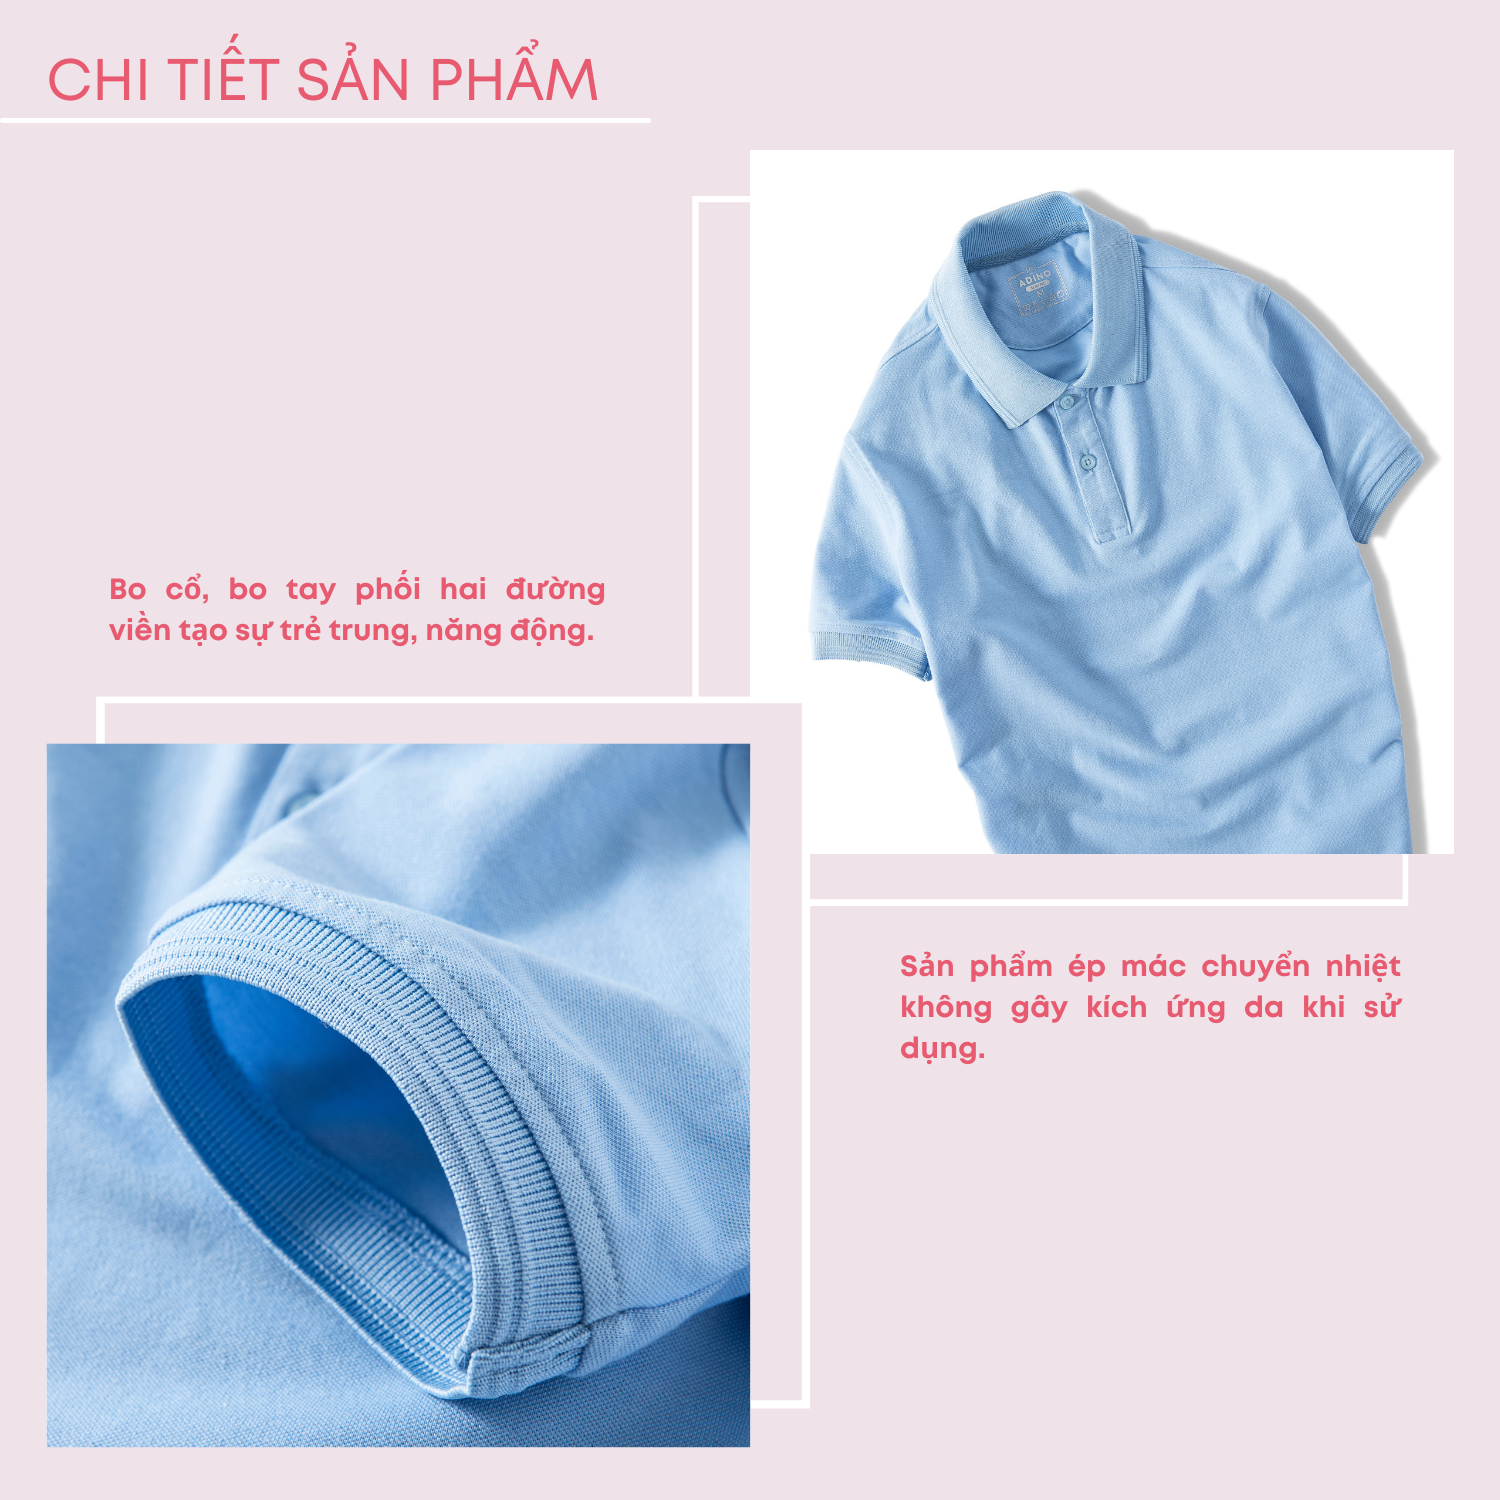 Áo polo nữ màu xanh biển nhạt phối viền chìm ADINO vải cotton polyester mềm dáng slimfit công sở hơi ôm trẻ trung APN03